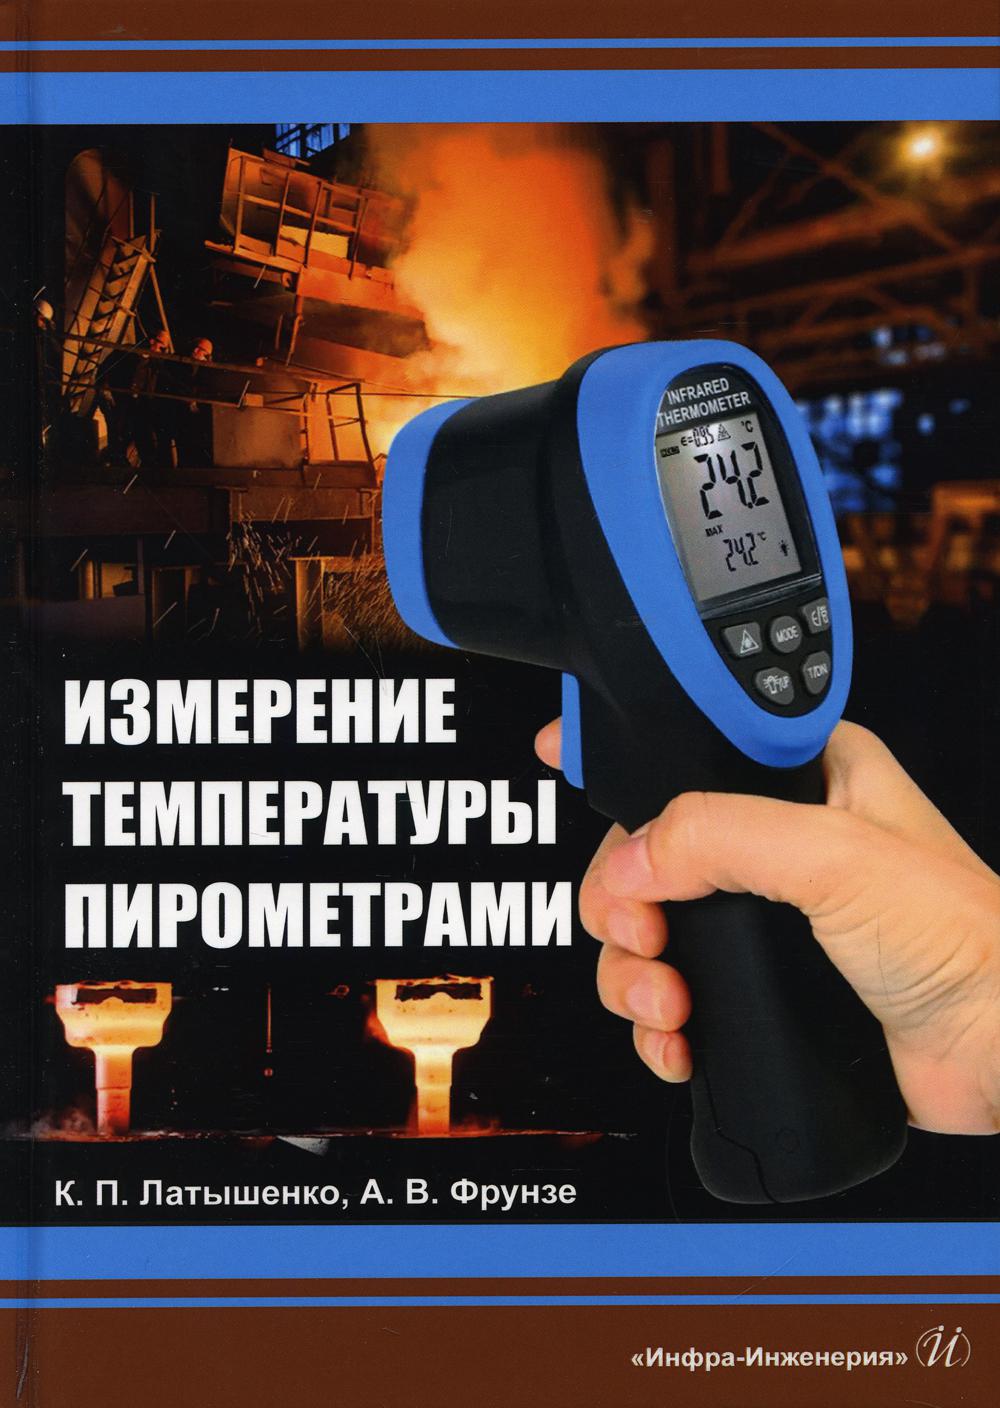 фото Книга измерение температуры пирометрами инфра-инженерия